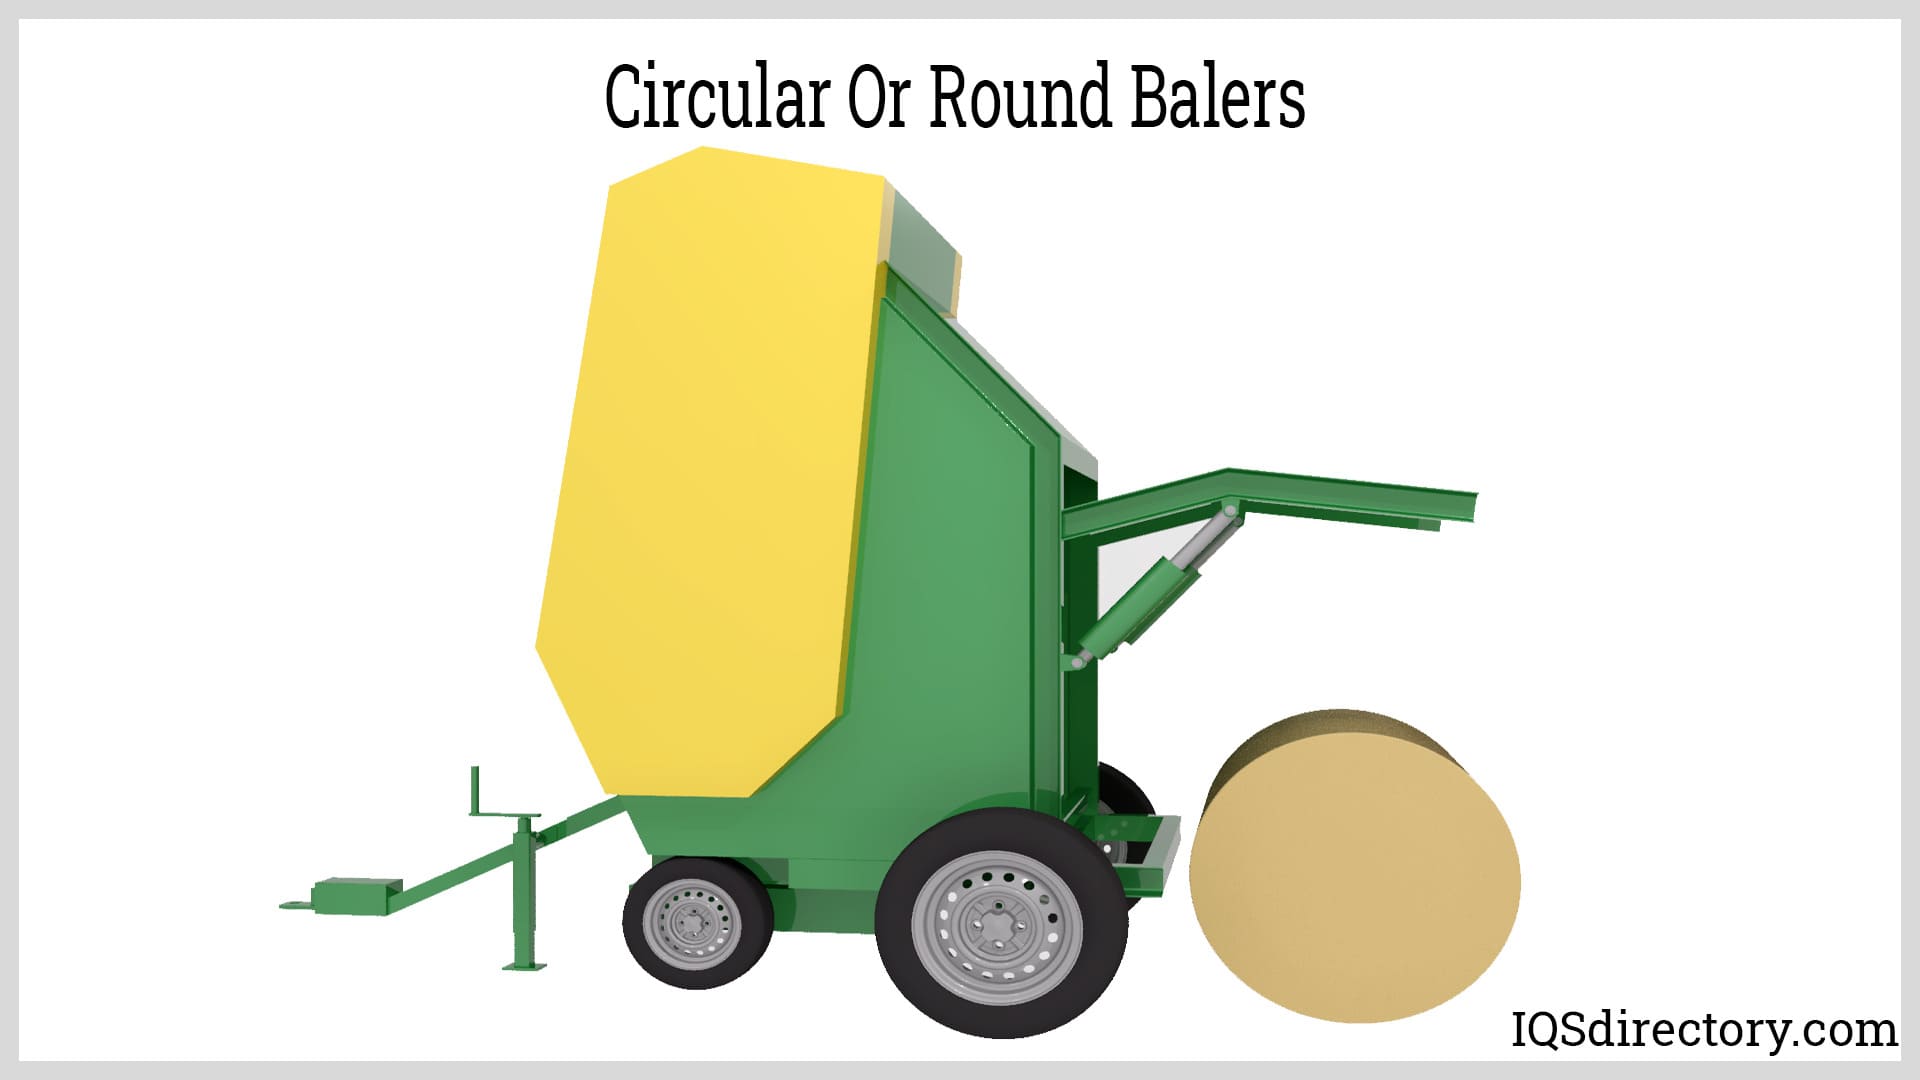 Circular or Round Balers